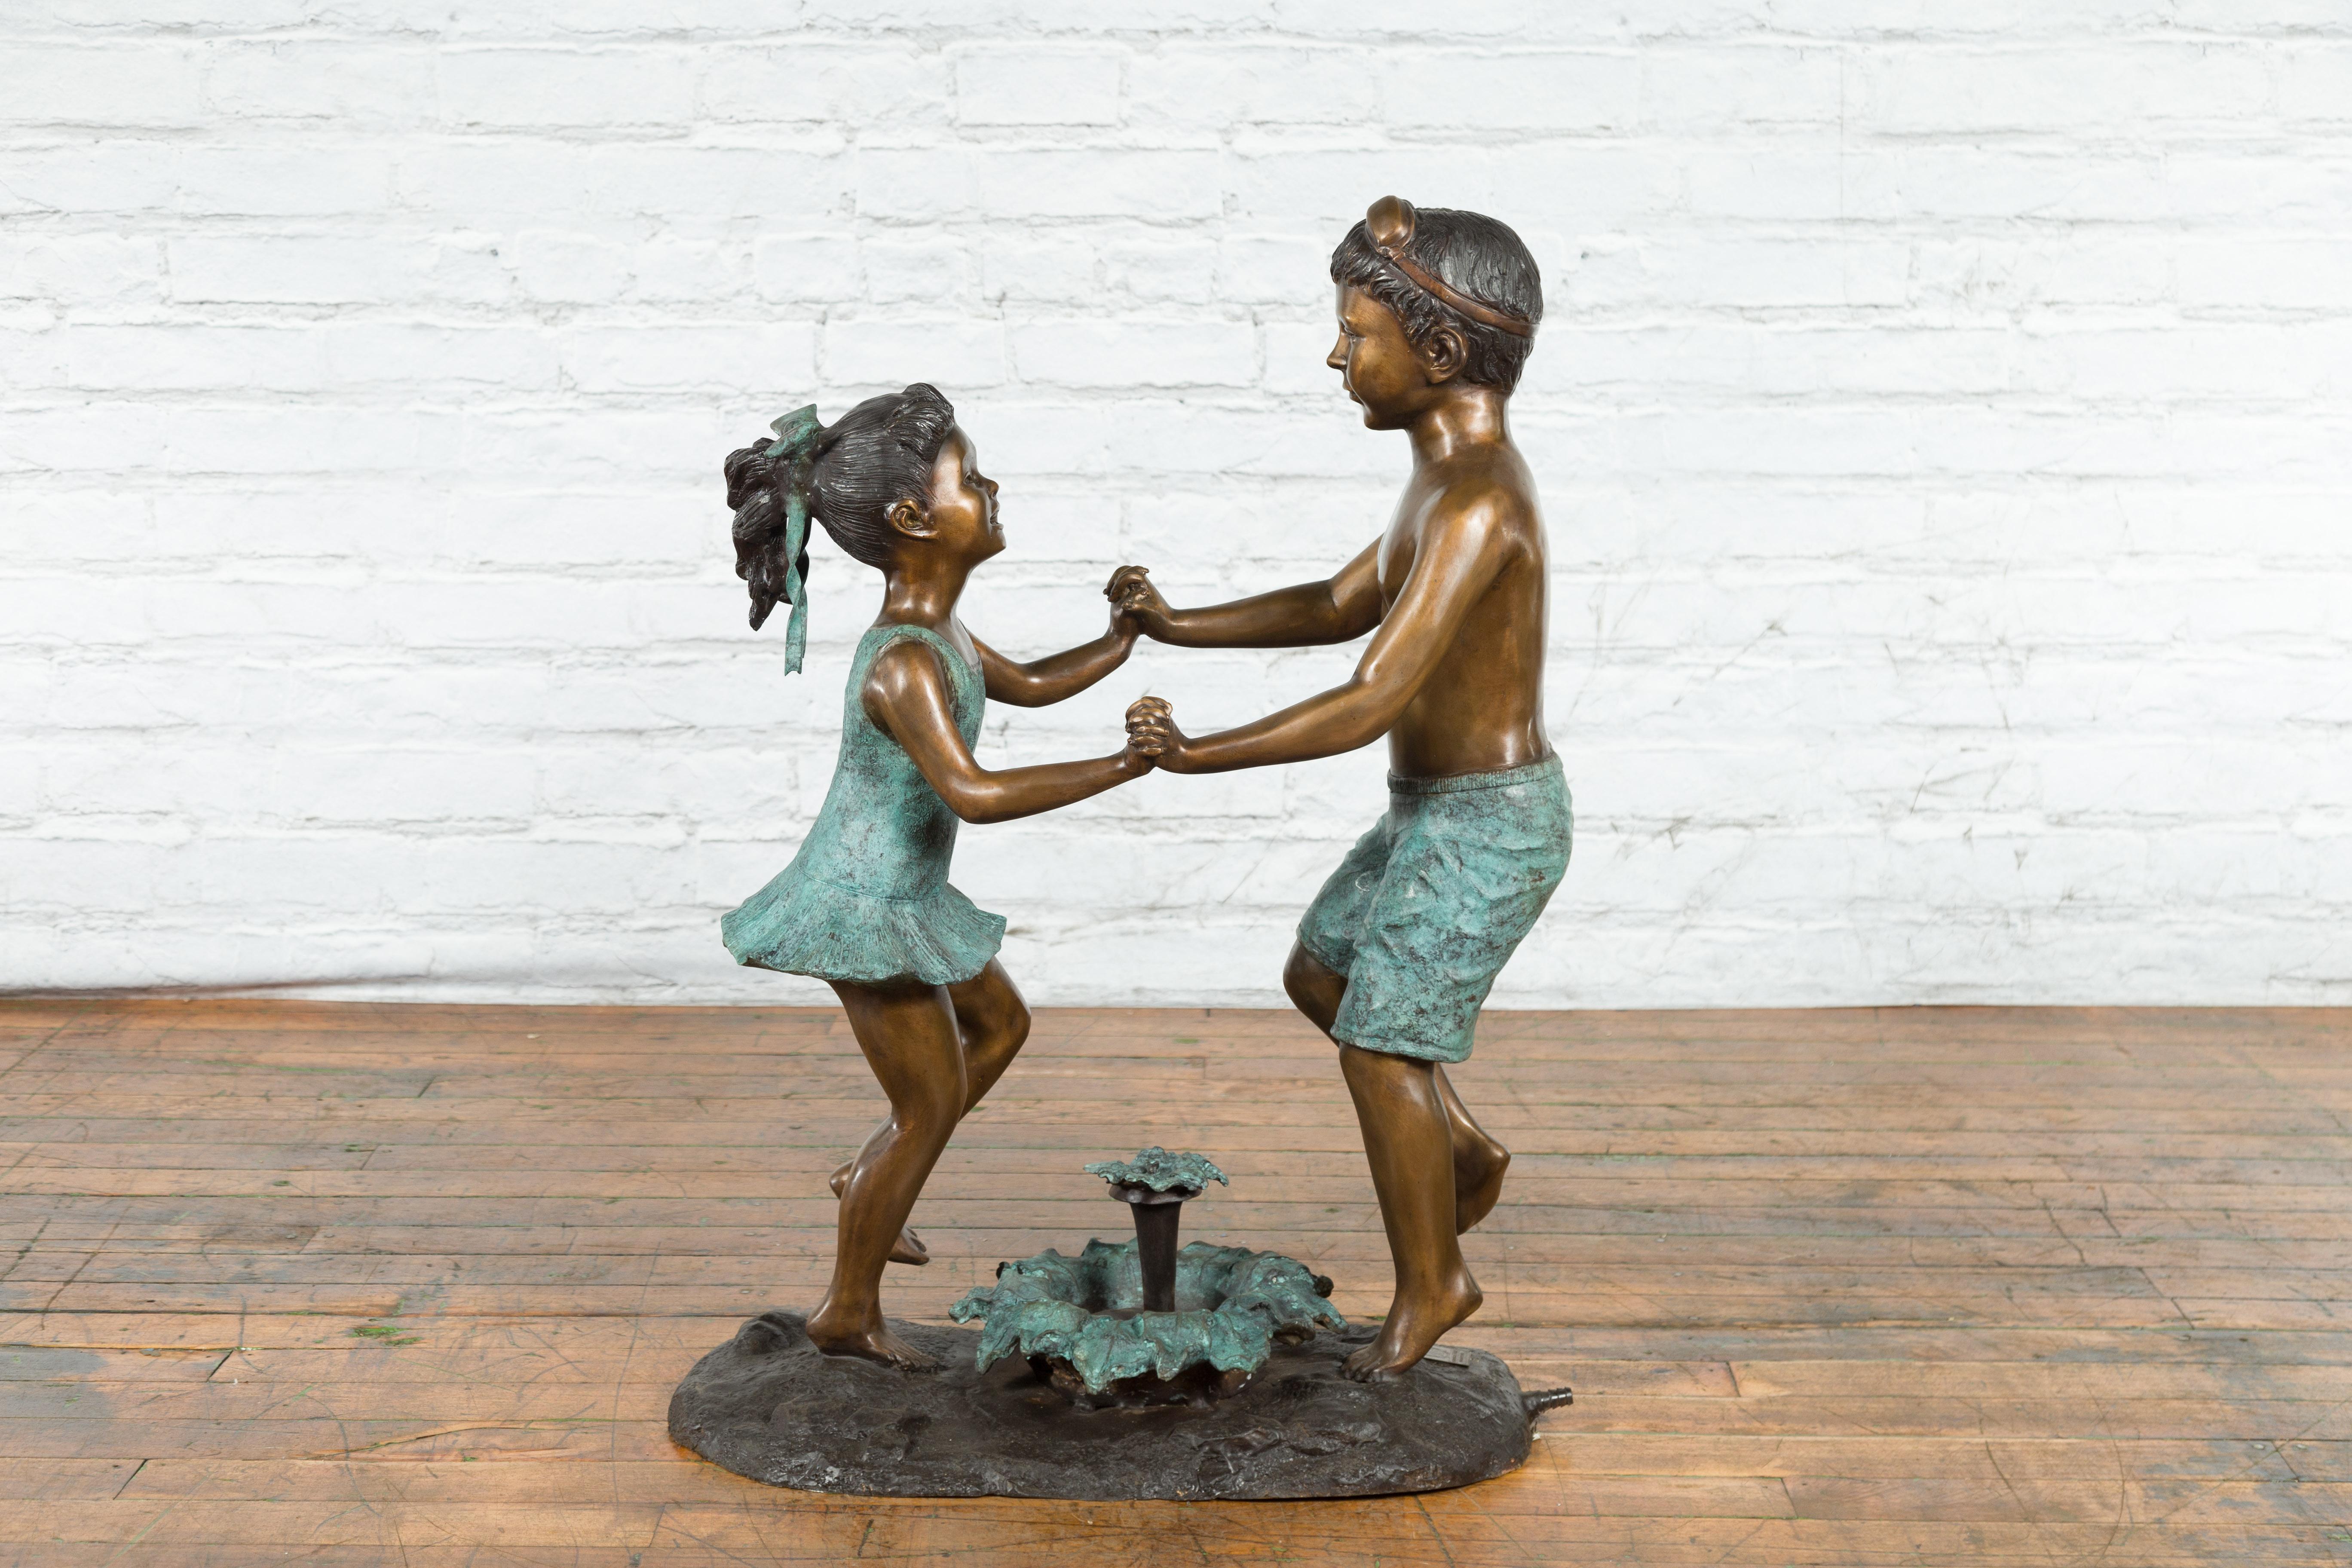 Groupe sculpté contemporain en bronze coulé à la cire perdue représentant des frères et sœurs qui dansent, avec patine bronze et vert-de-gris appliquée à la main, tubé comme une fontaine. Il s'agit d'une production en cours, et le délai de livraison